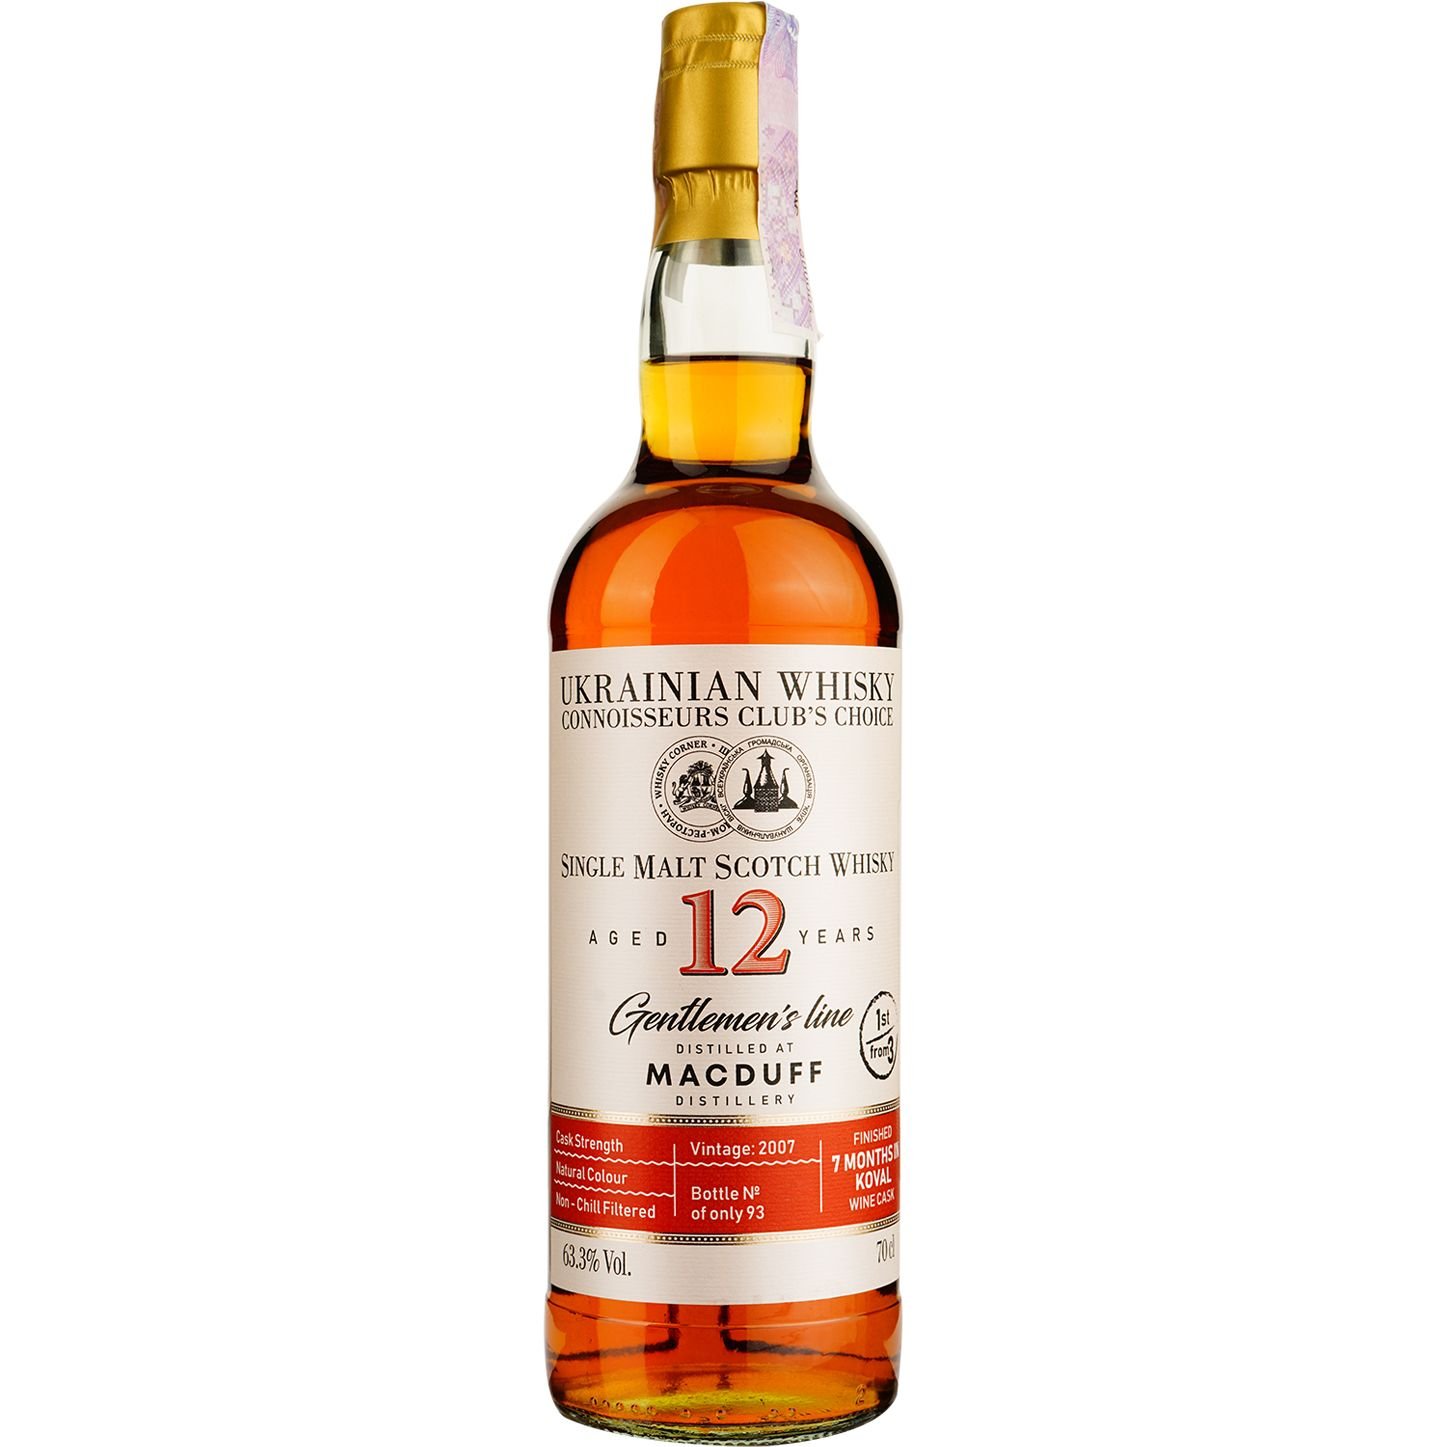 Віскі Macduff 12 Years Old Koval Single Malt Scotch Whisky, у подарунковій упаковці, 63,3%, 0,7 л - фото 2